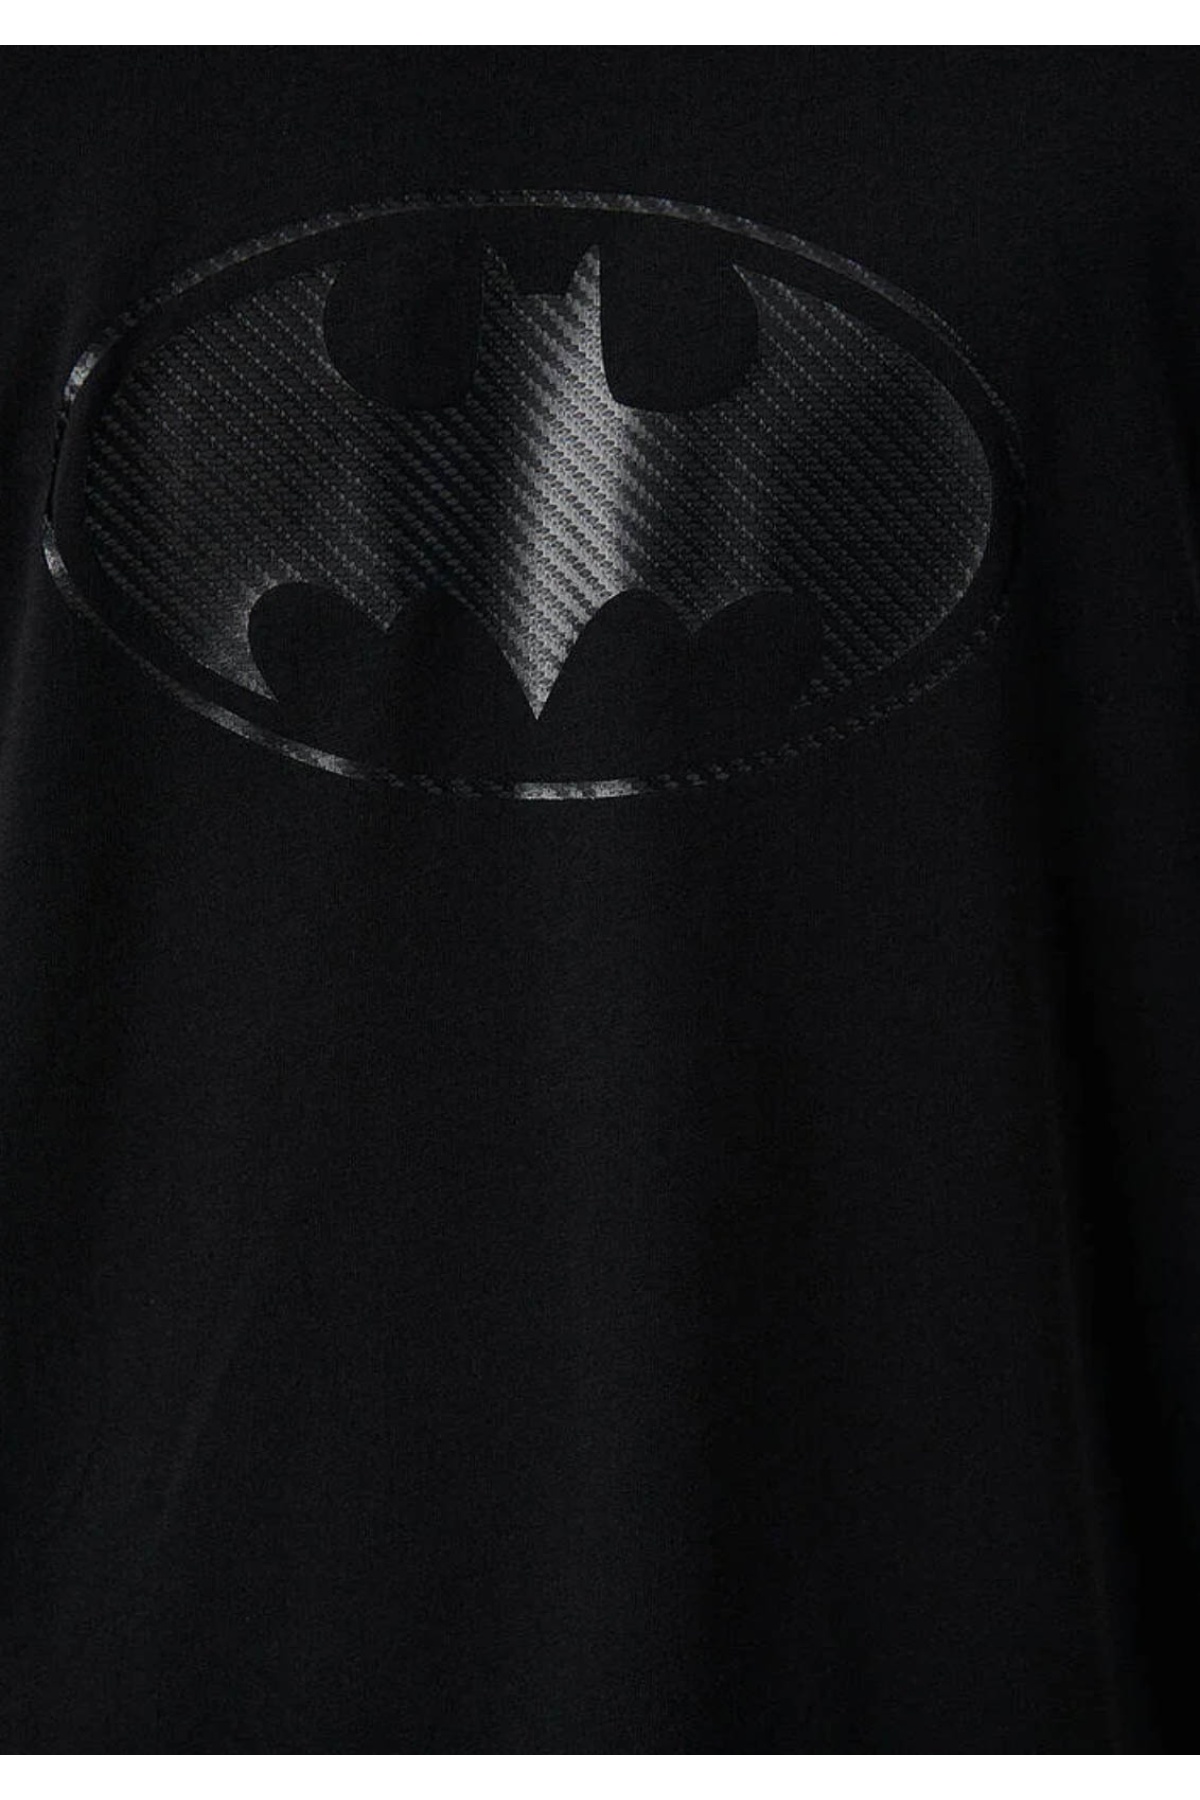 Batman Baskılı Siyah Tişört